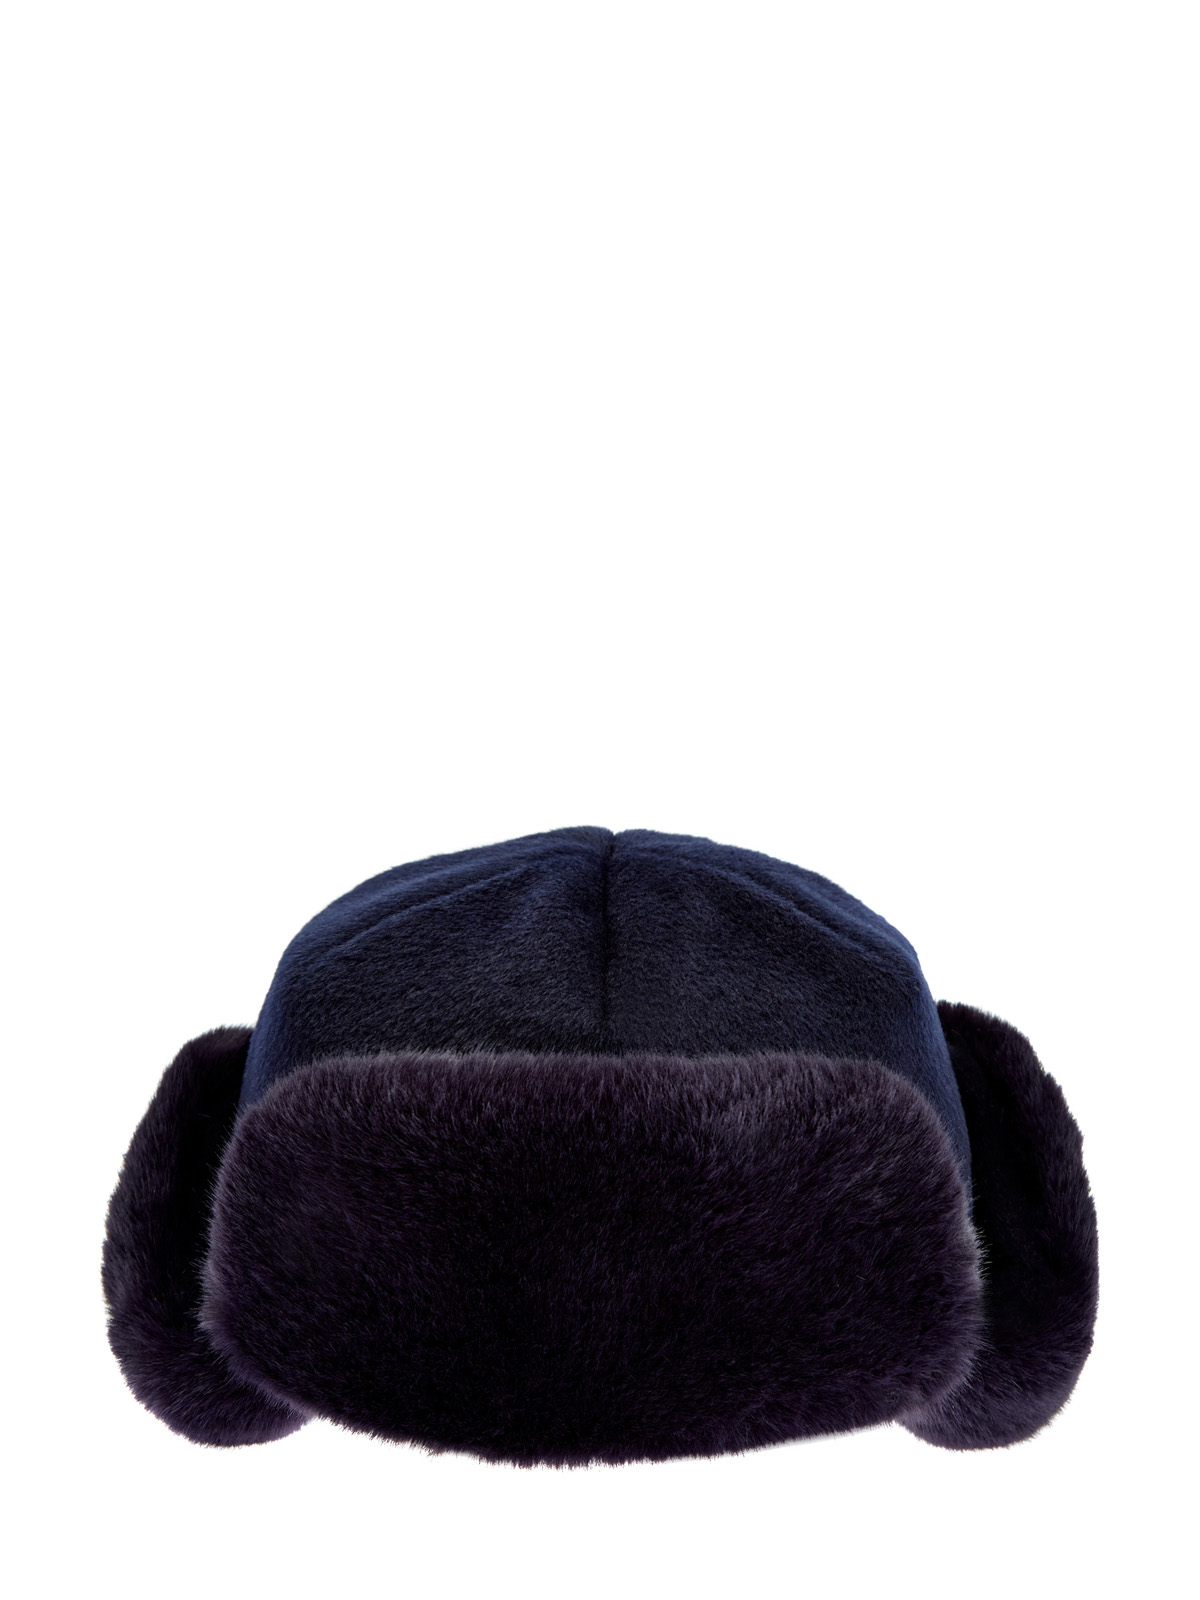 Утепленная шапка-трансформер из шерсти и эко-меха CUDGI, цвет синий, размер L - фото 1